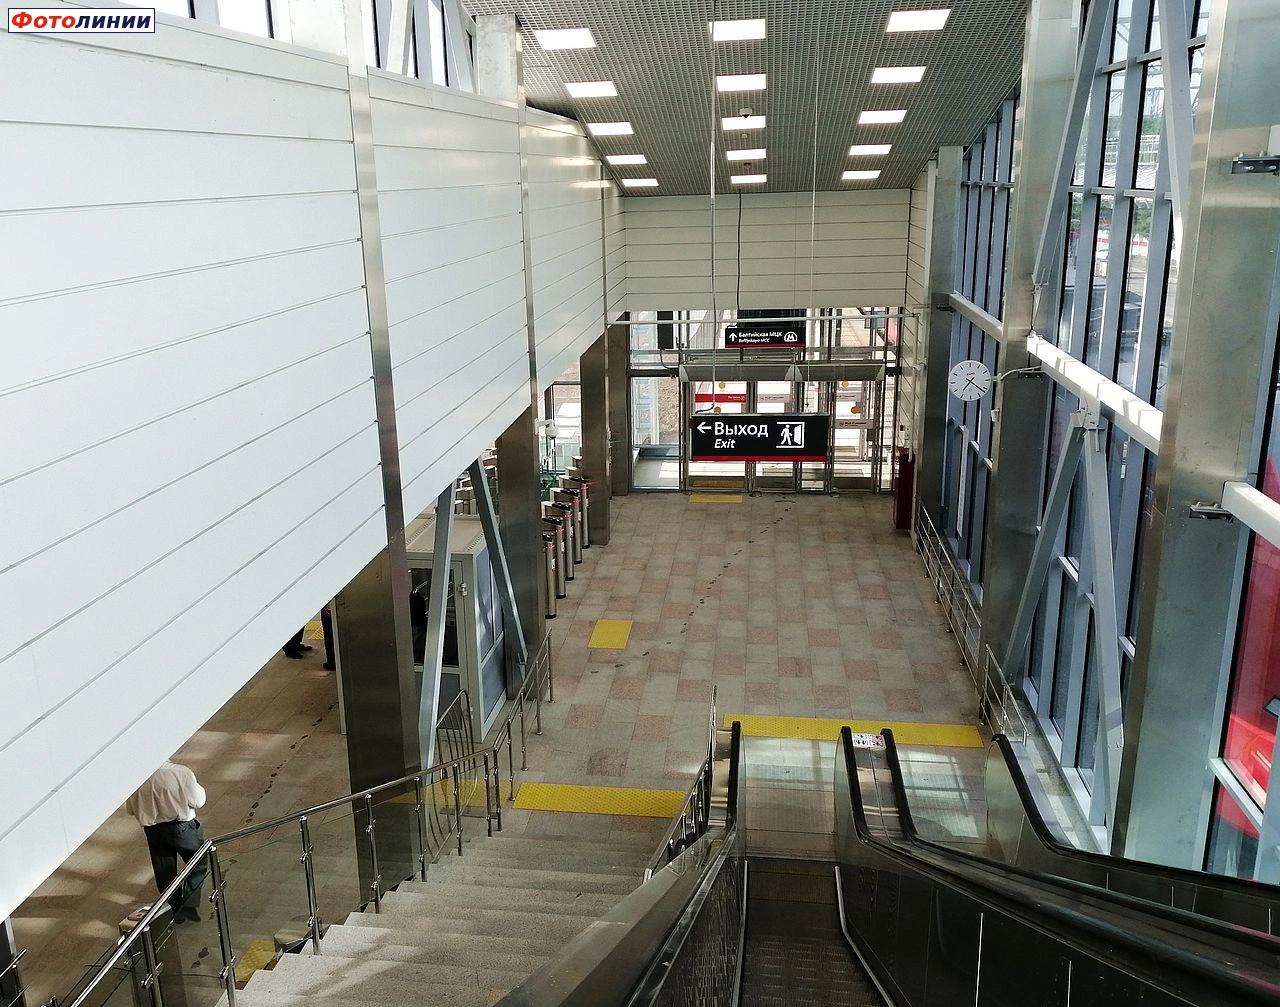 Интерьер северного вестибюля, выход в город и на платформу в сторону о.п. Балтийская